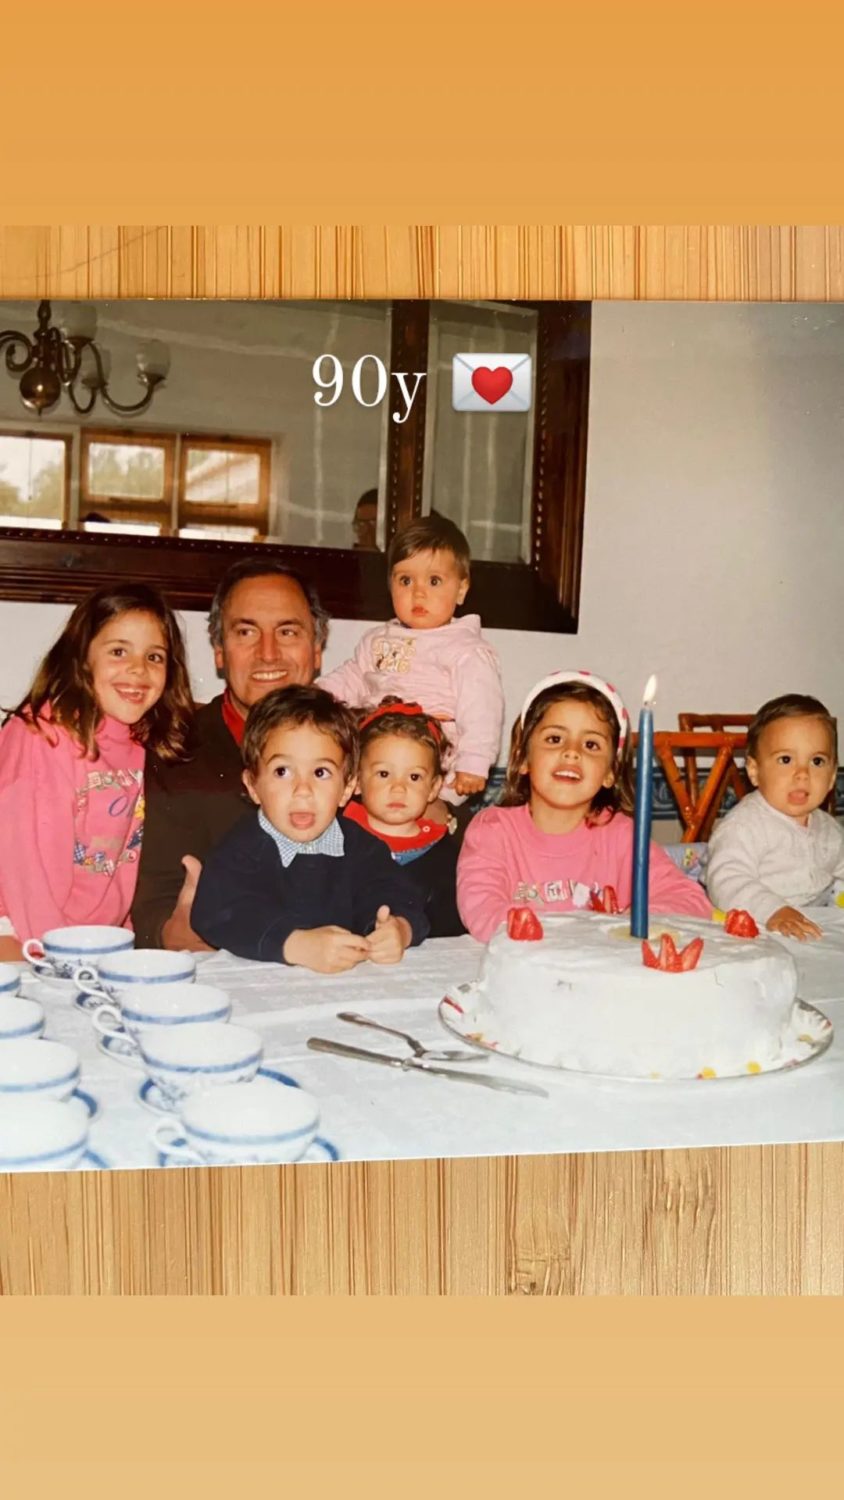 Carolina Patrocínio revela foto antiga com o avô e celebra data especial: &#8220;90 anos&#8221;